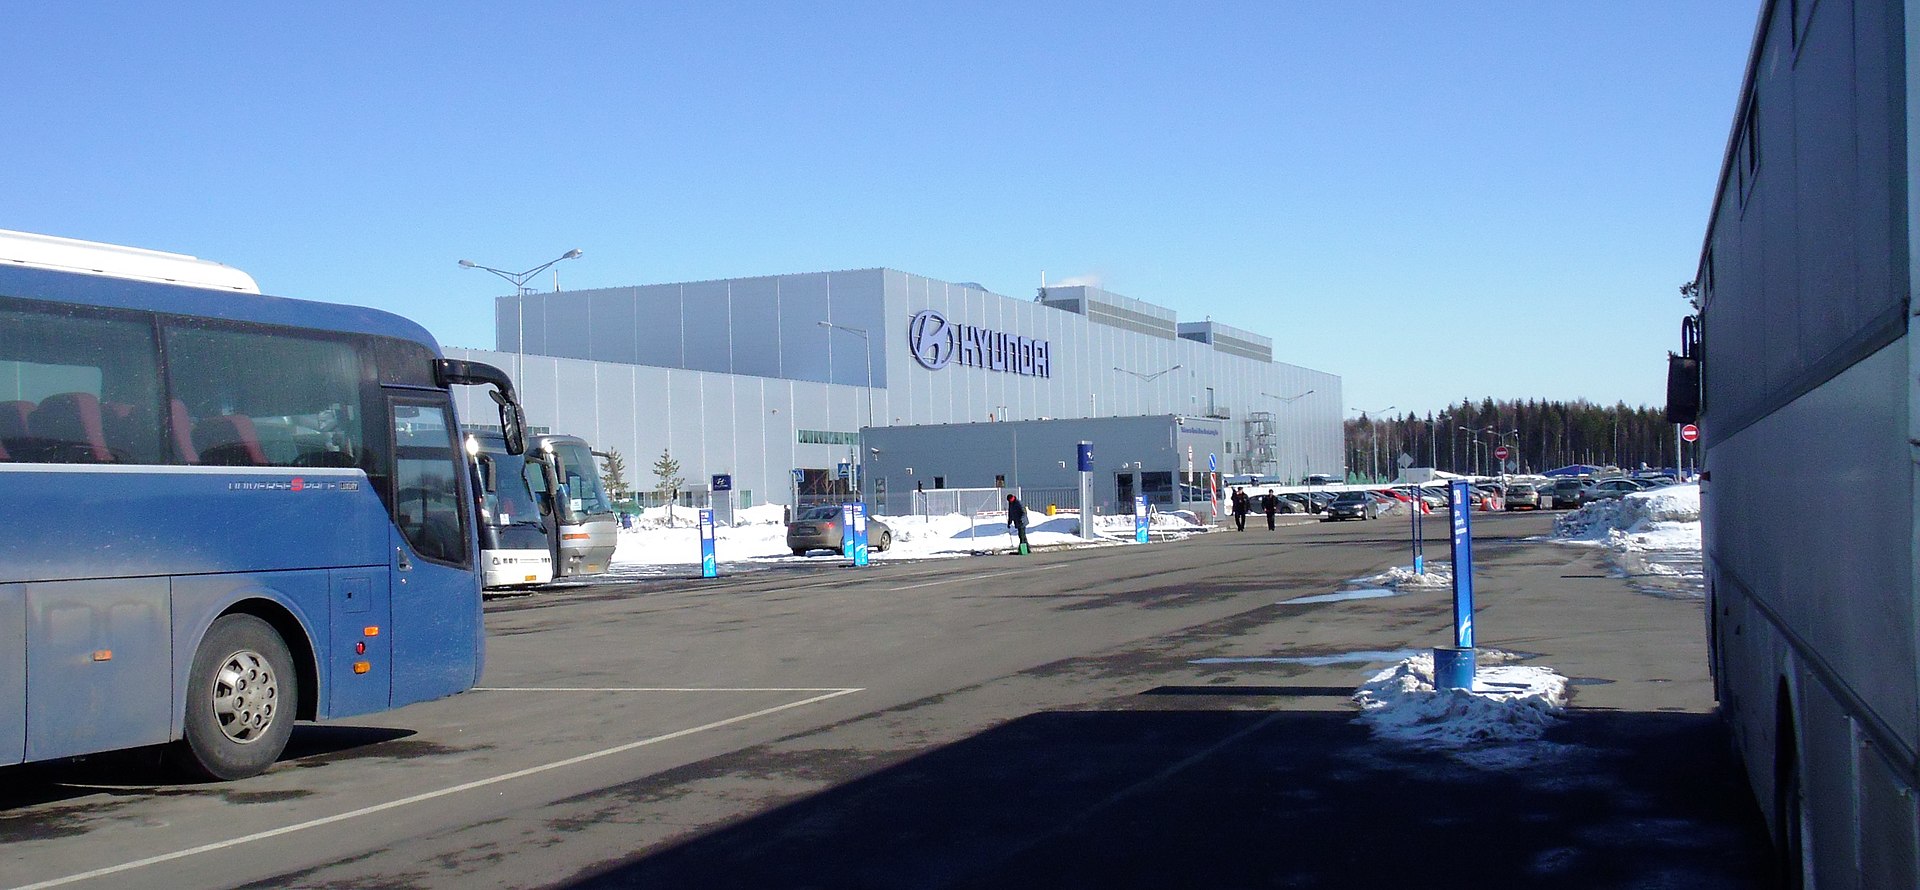 В Санкт-Петербурге бывший завод Hyundai сменил название